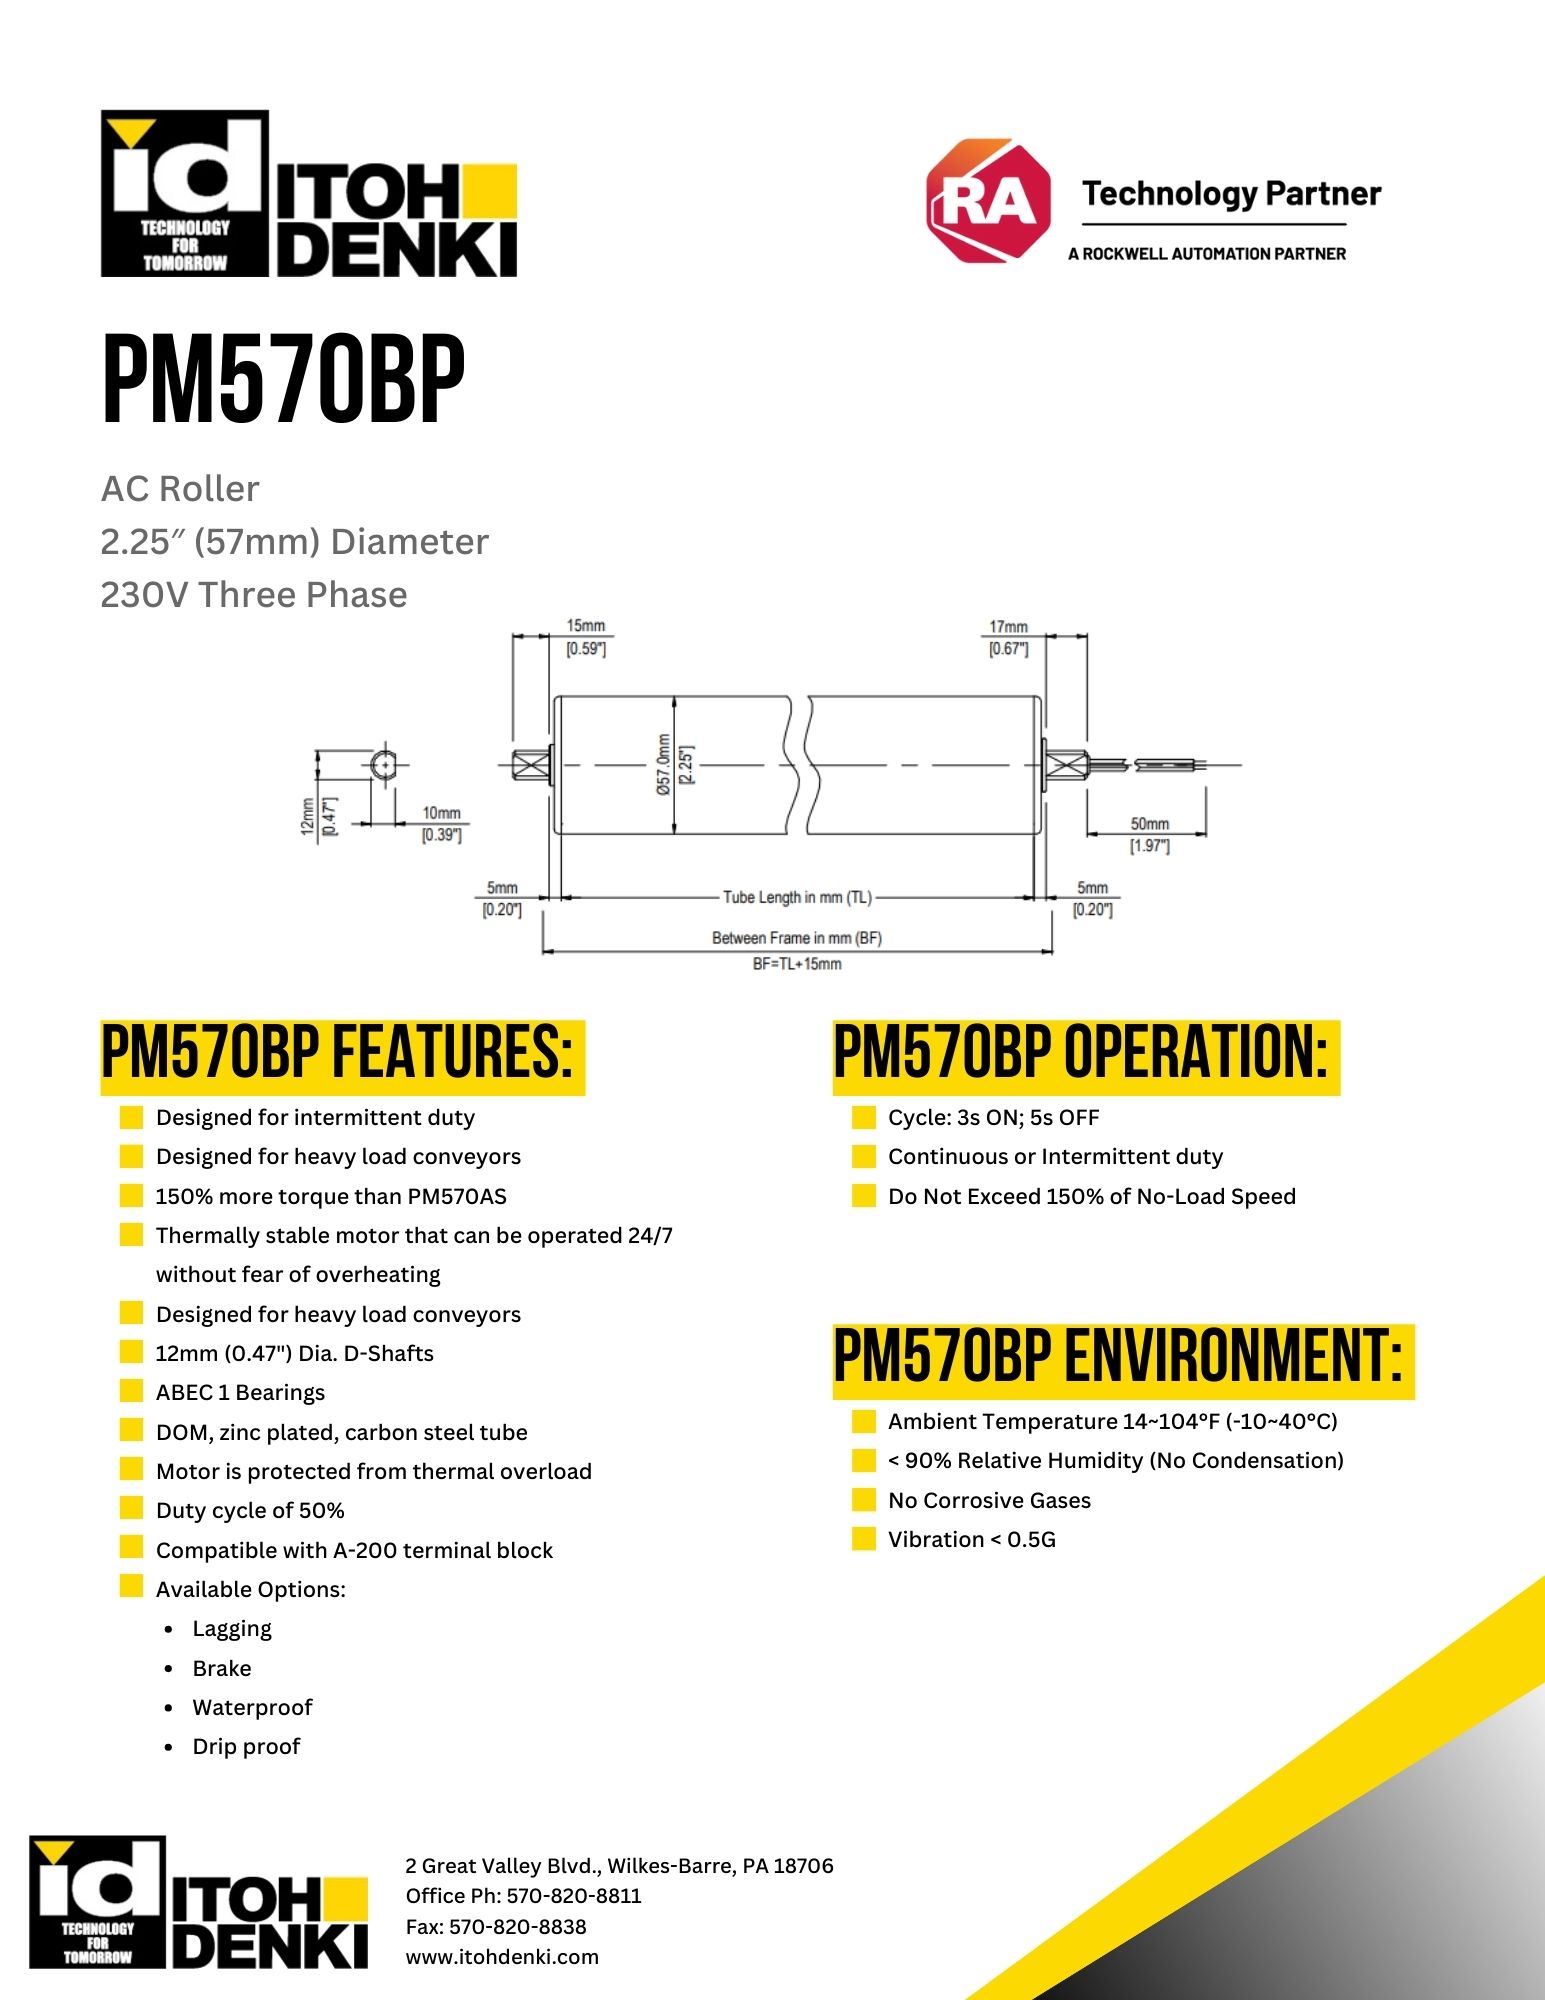 Itoh Denki PM570BP AC roller product sheet